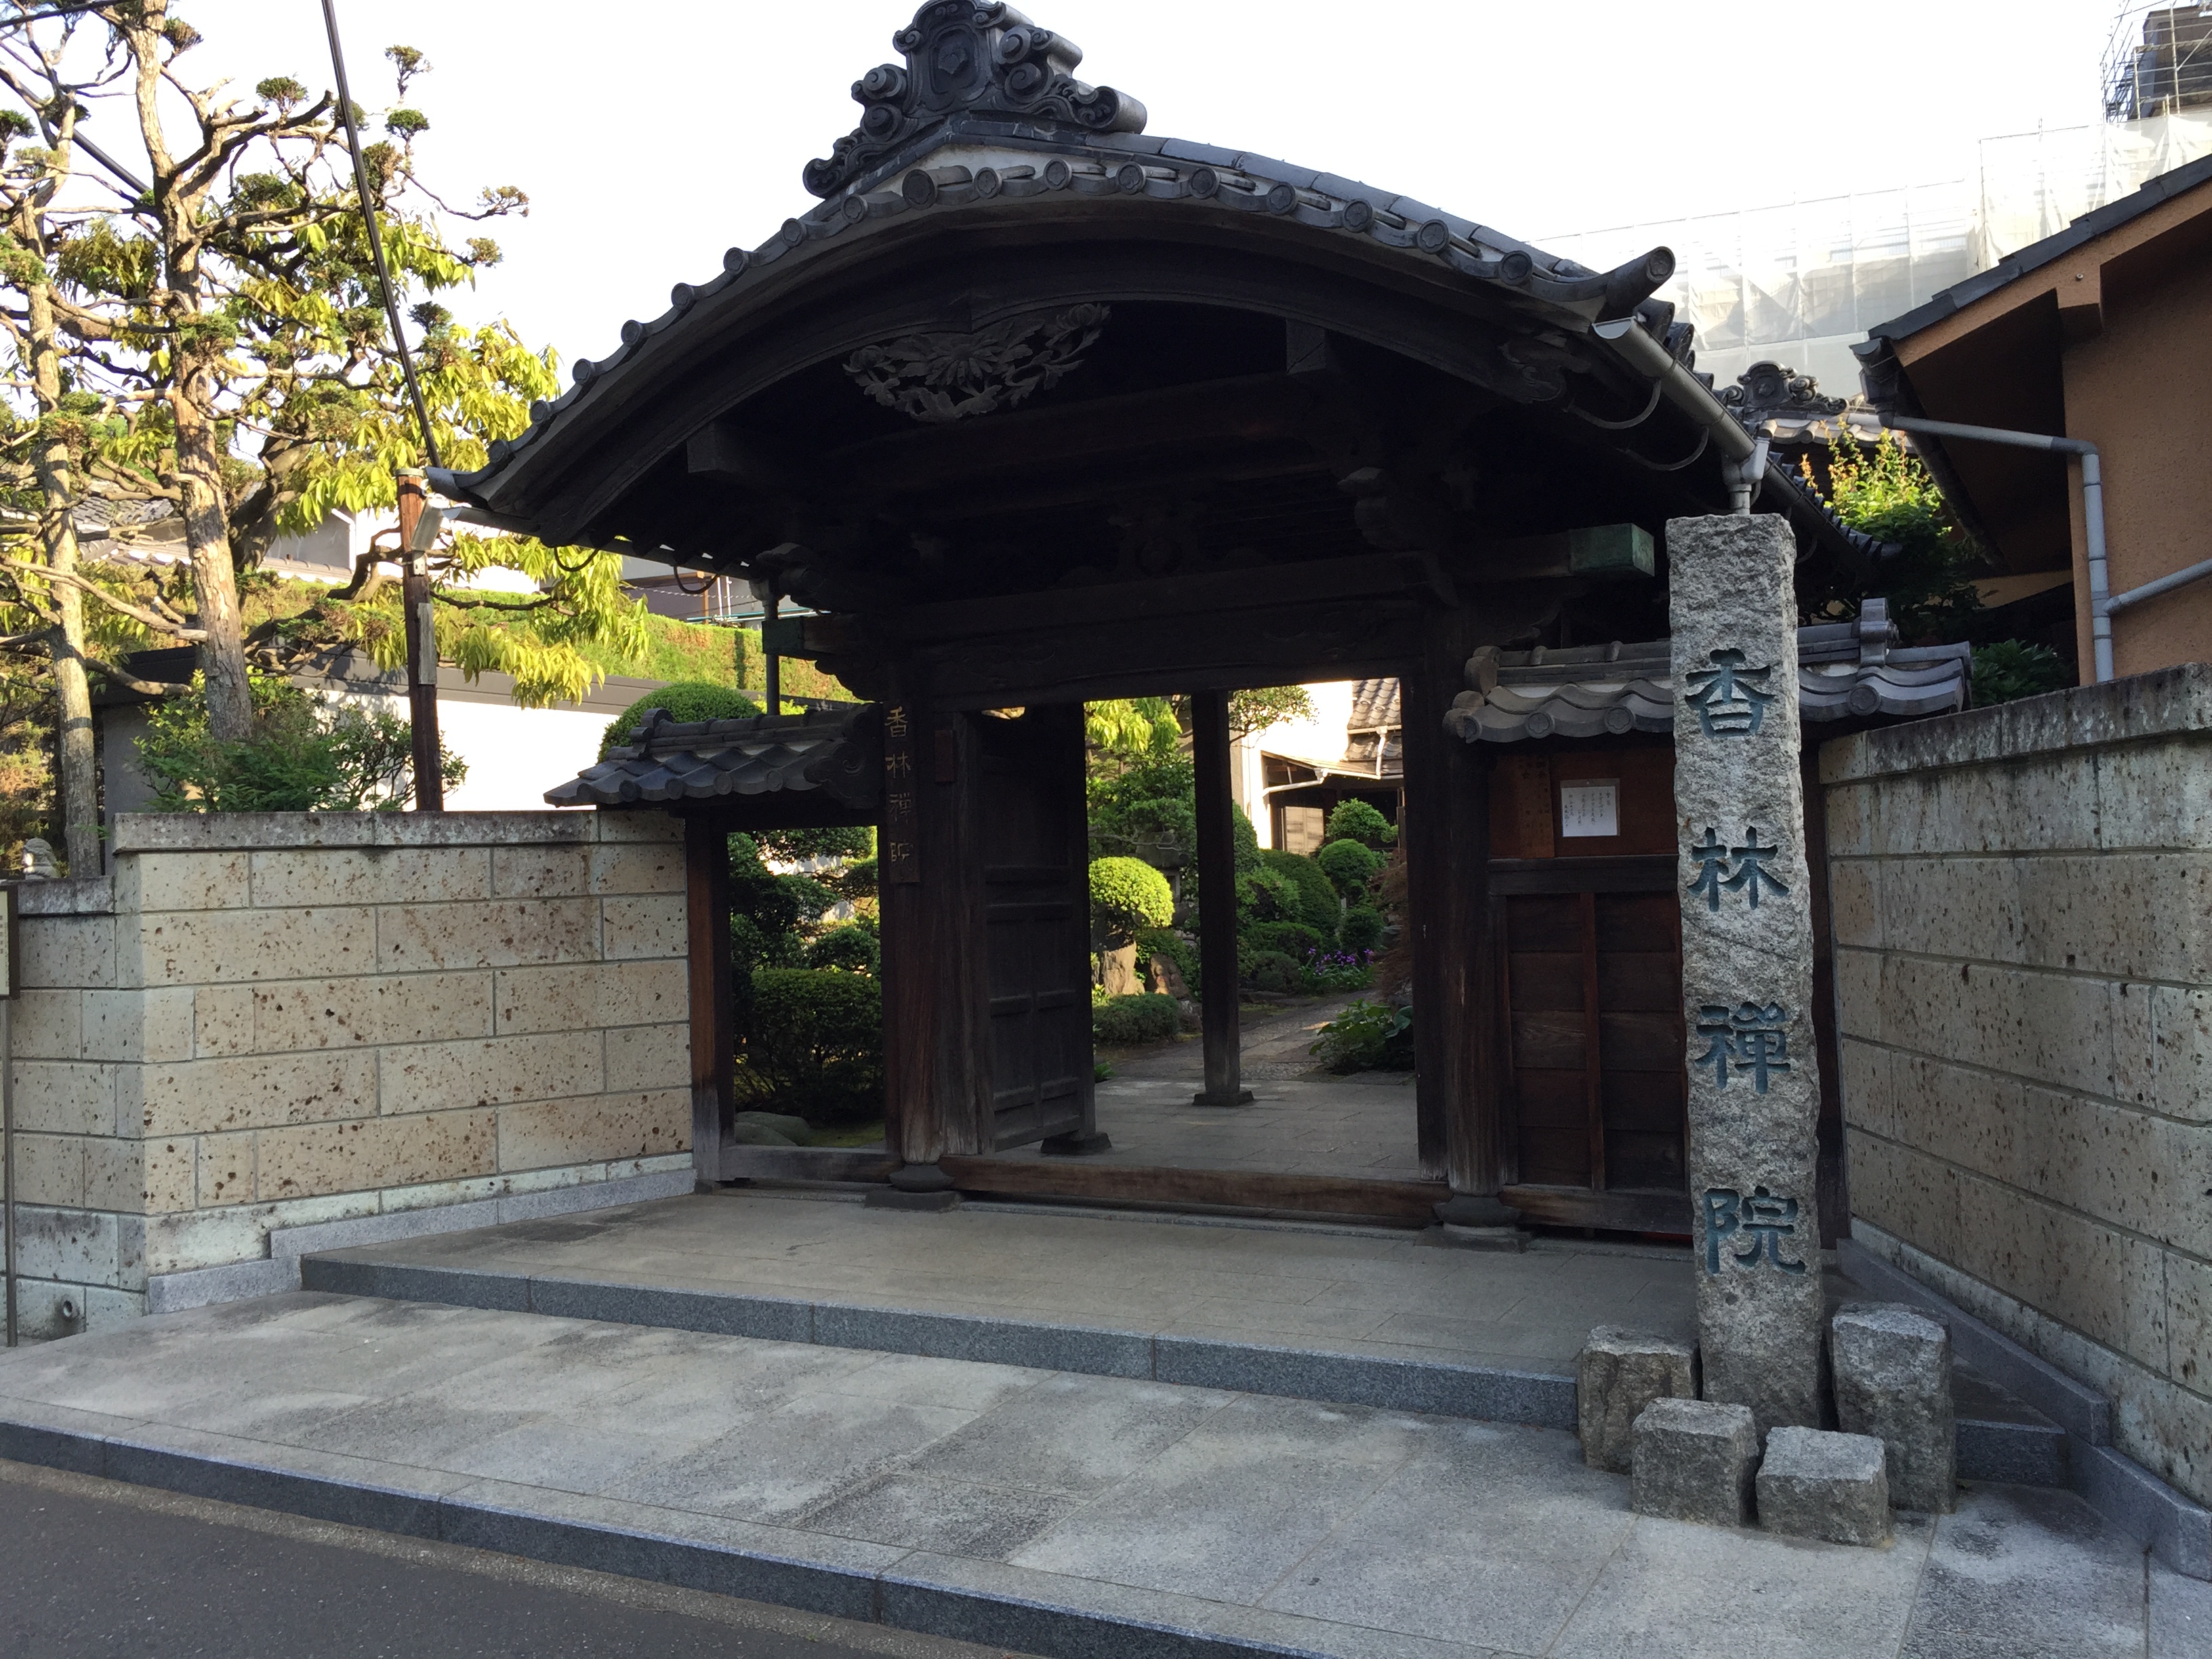 東京・広尾のお寺で朝座禅体験！無料で気軽に参加できました